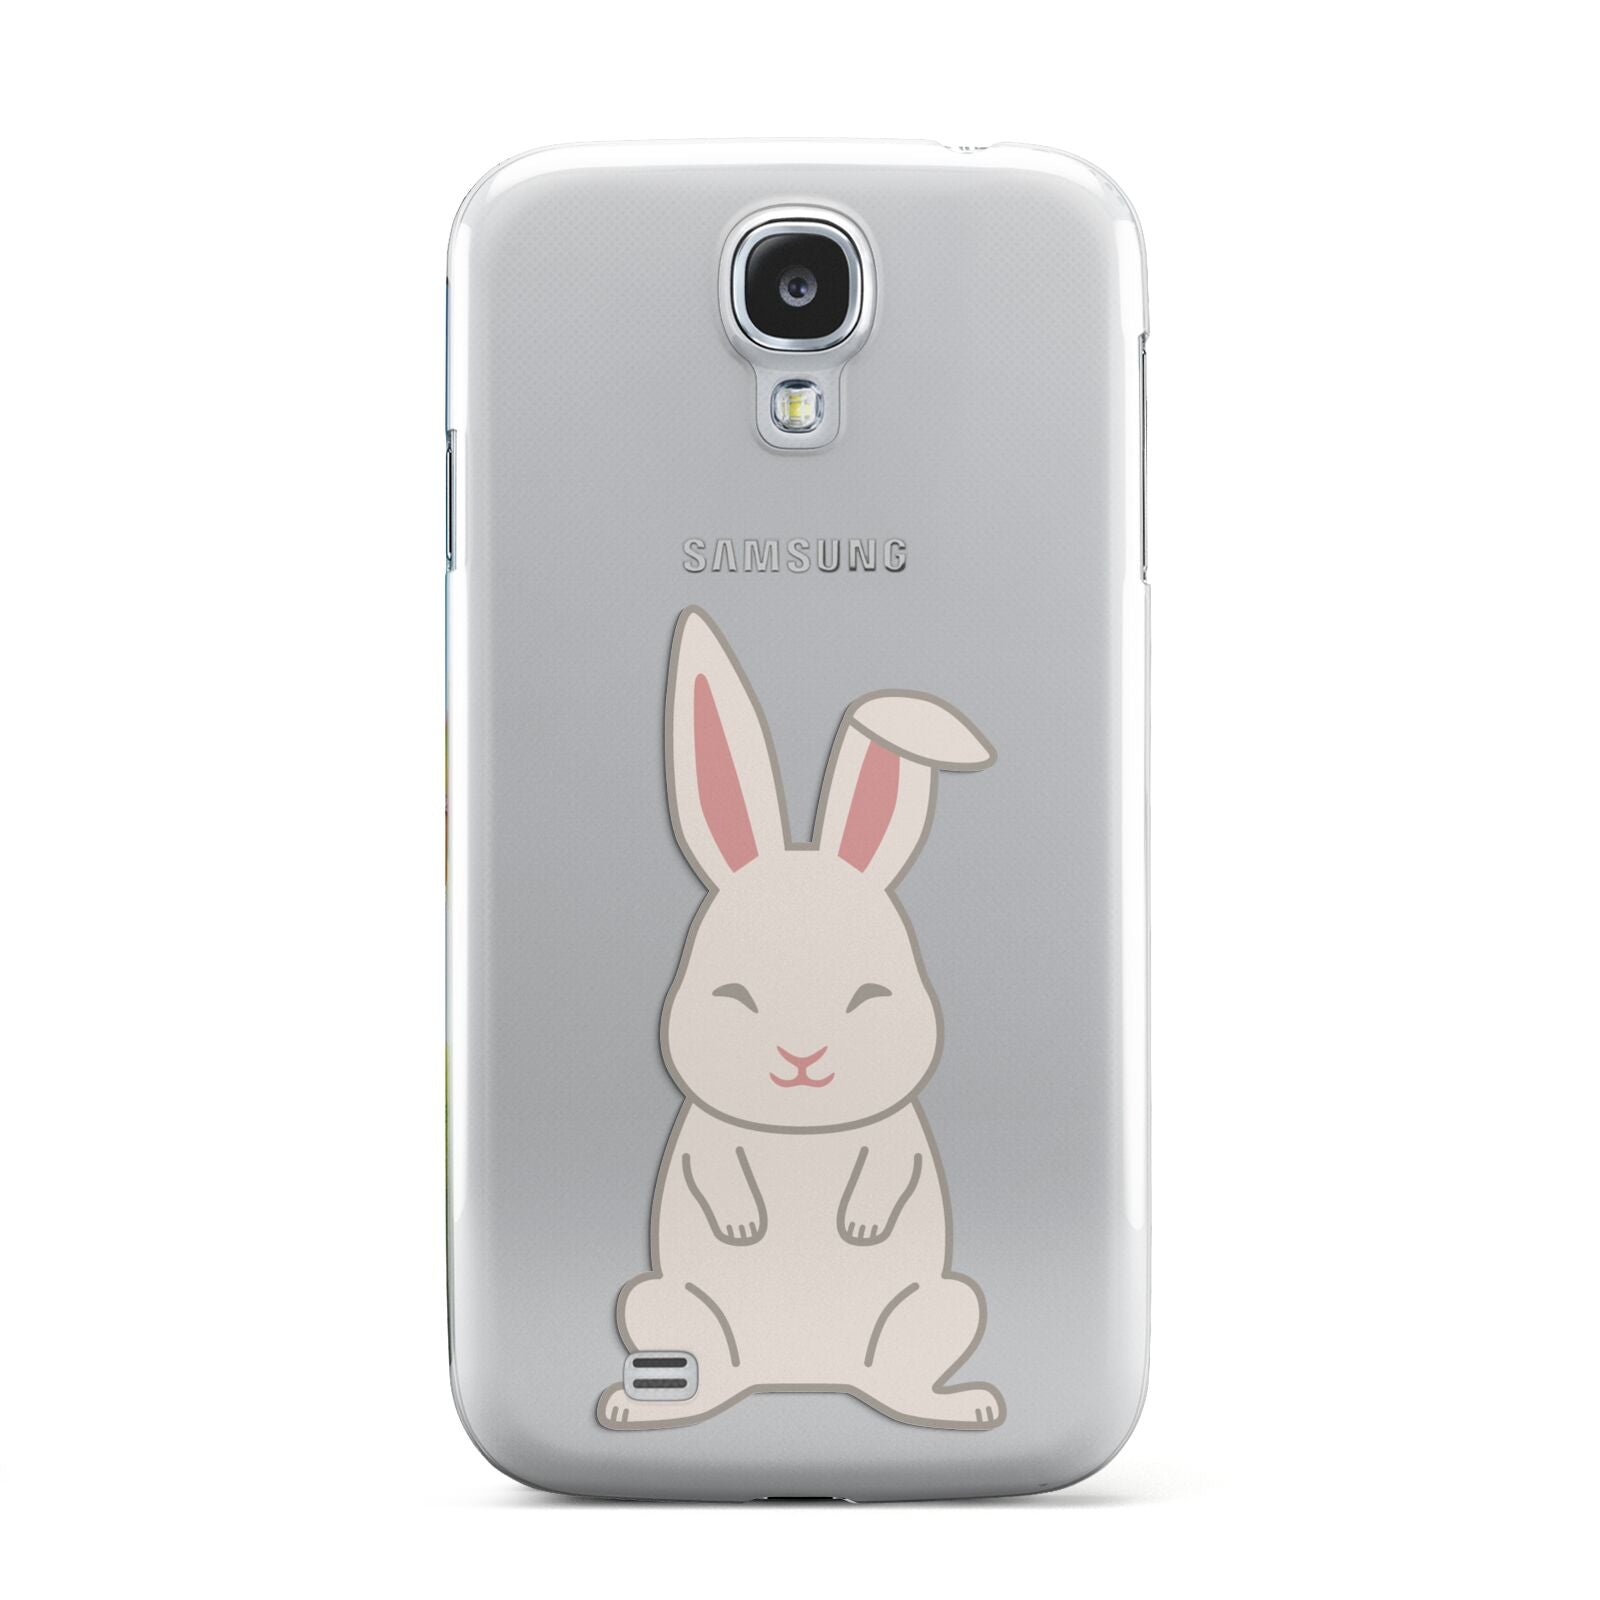 Bunny Samsung Galaxy S4 Case